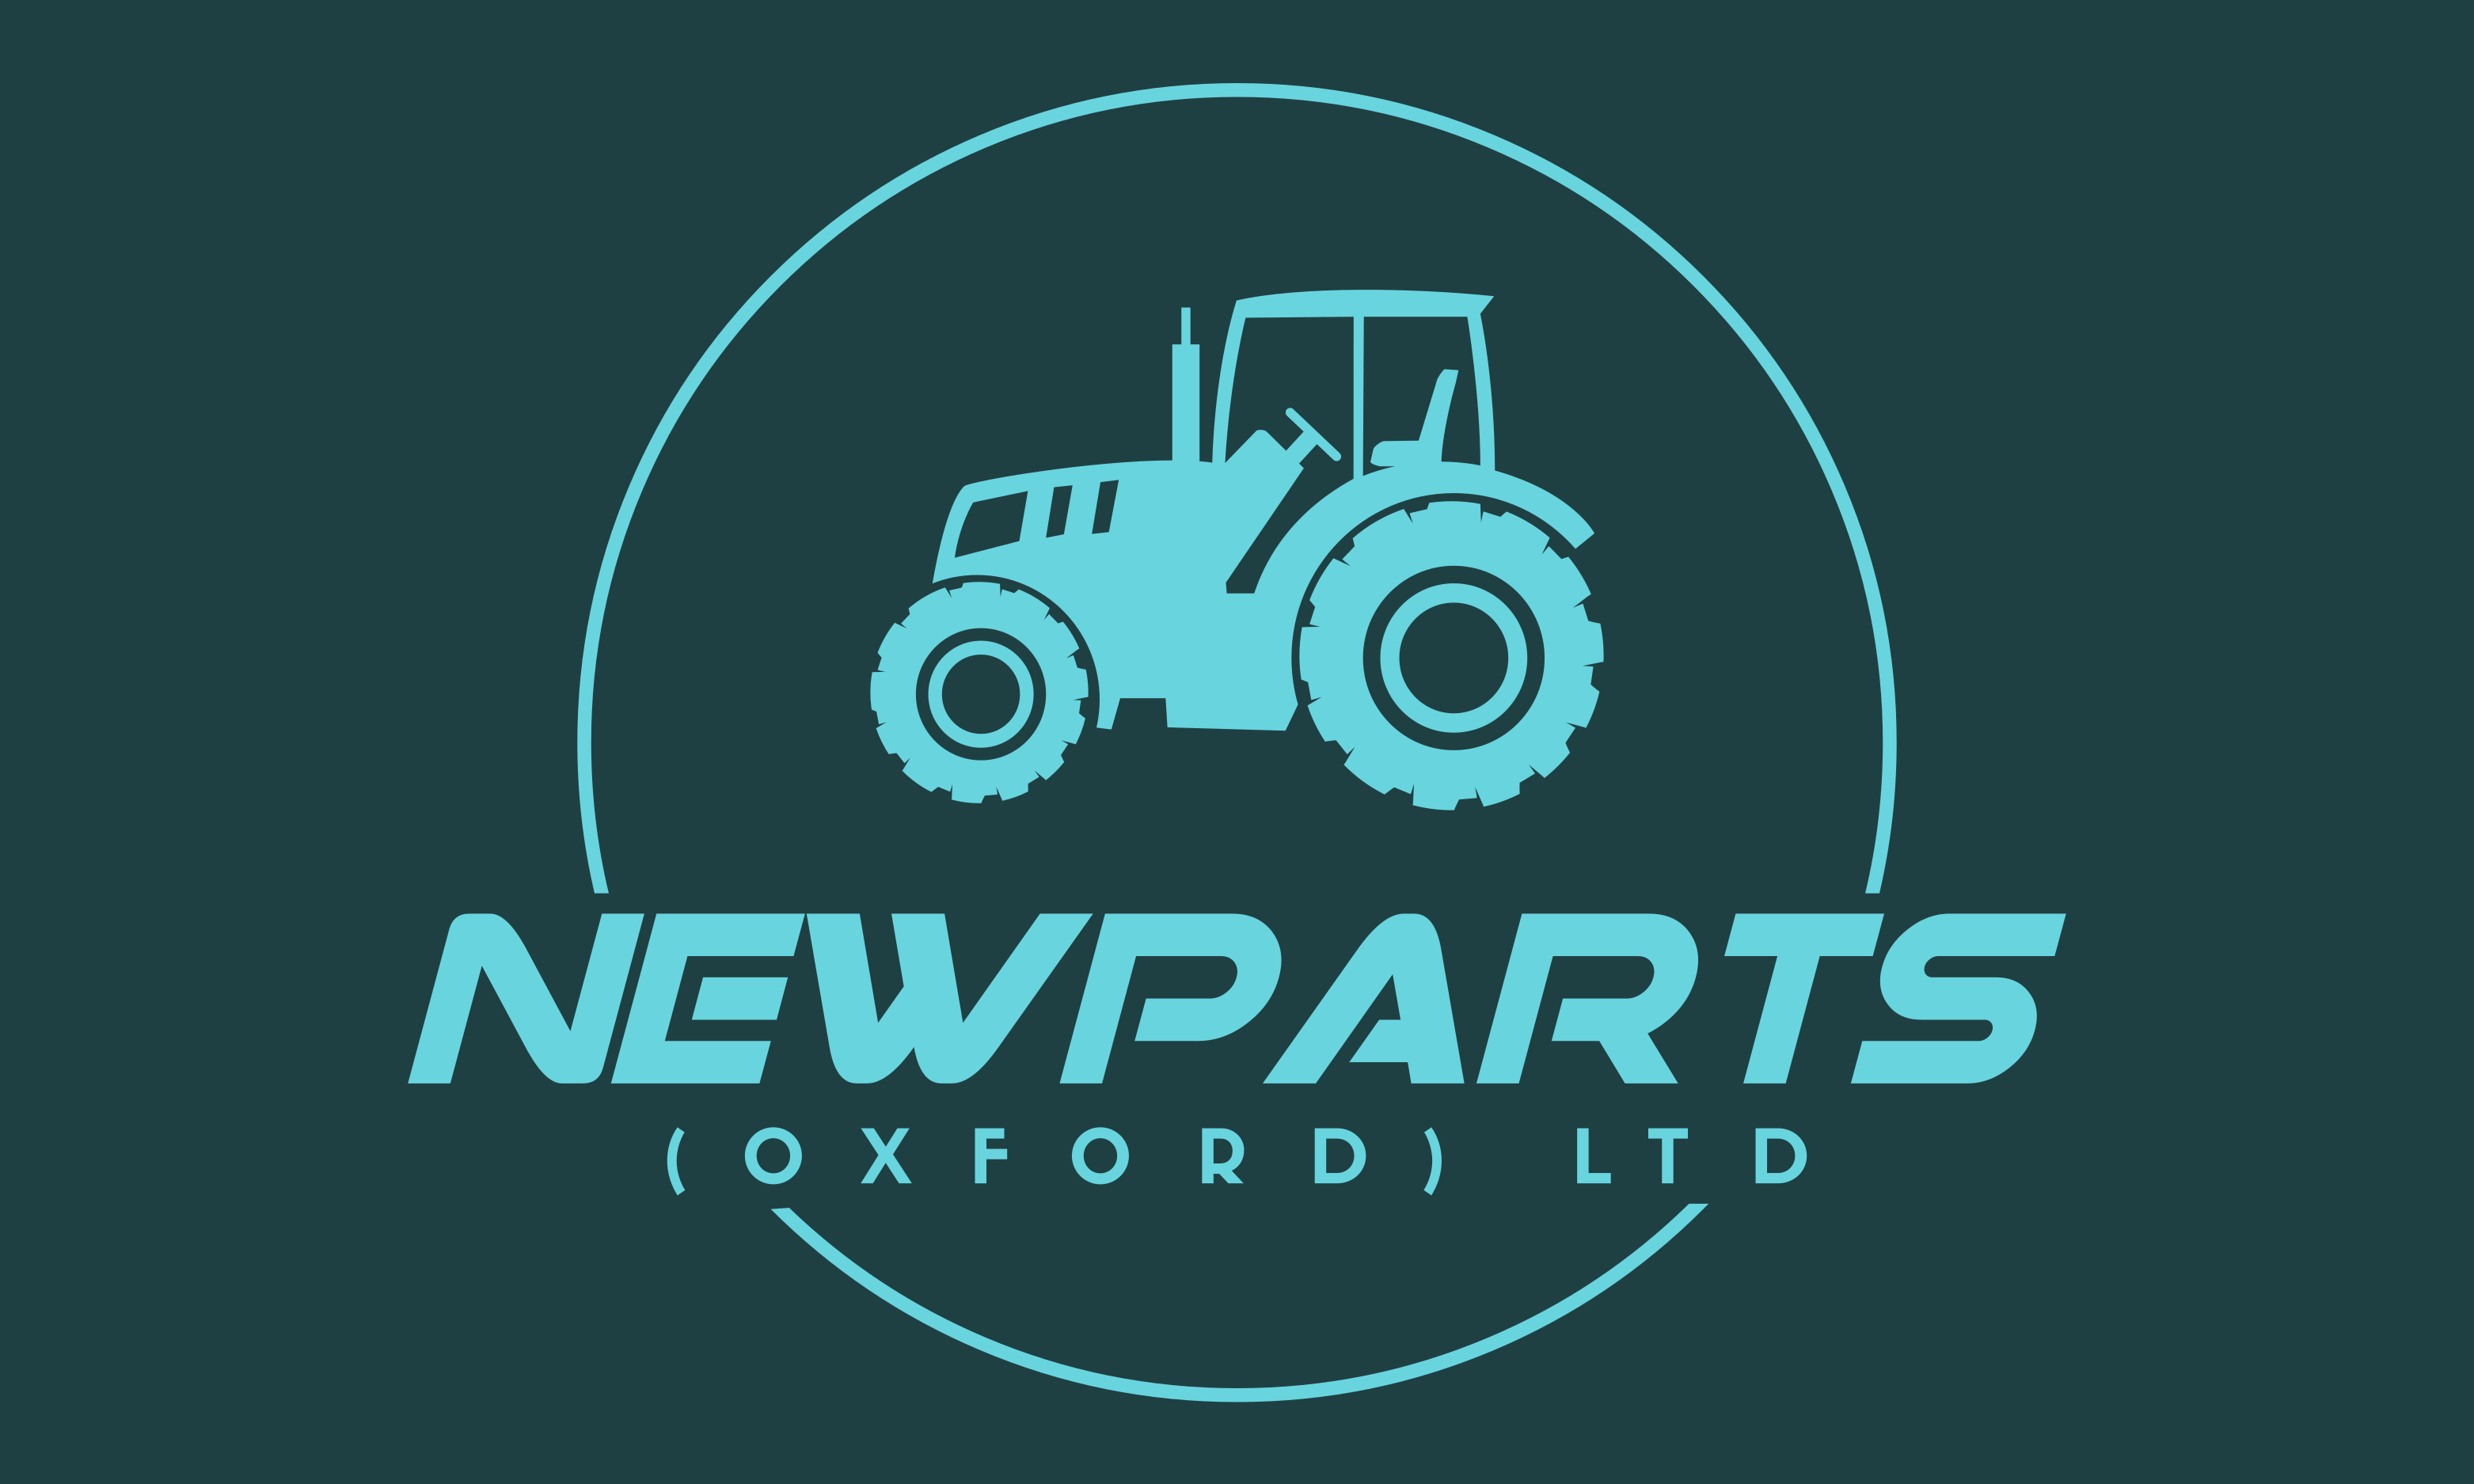 Newparts (Oxford) Ltd